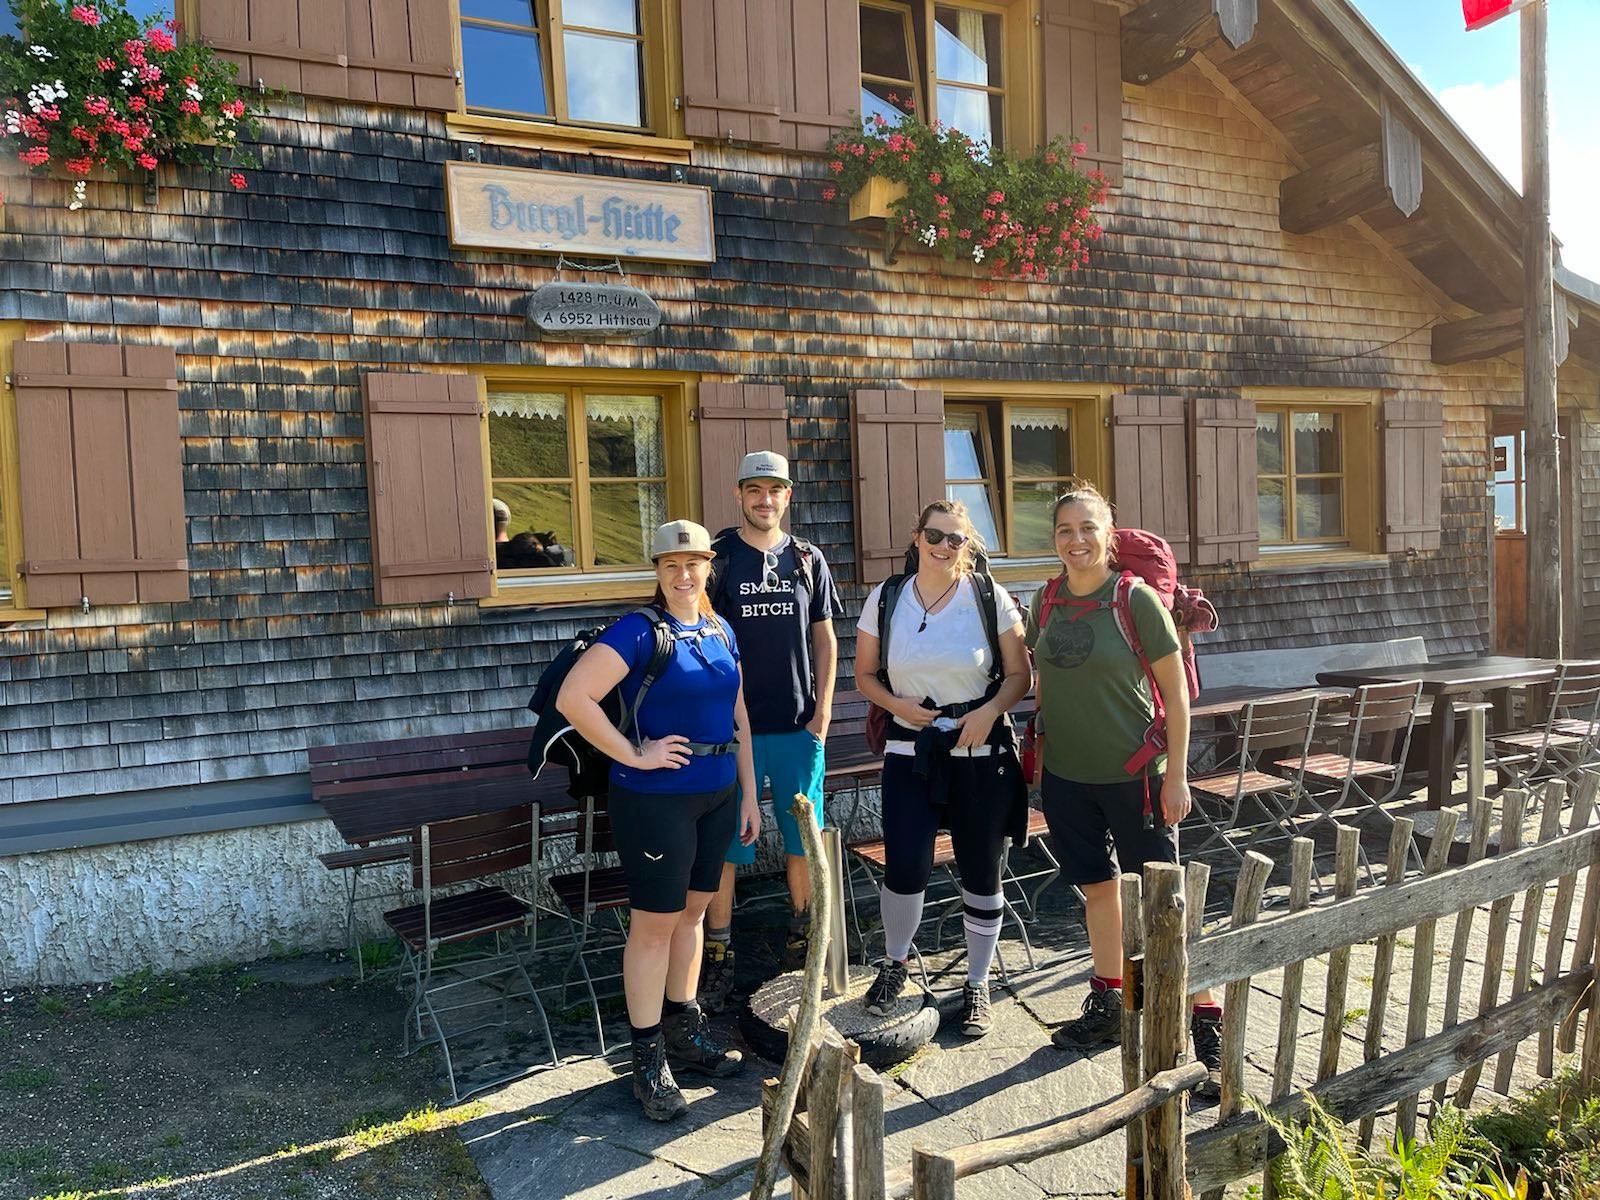 Wanderung vom Vorarlberg Guid Min Weag auf die Burgl Hütte in Hittisau.